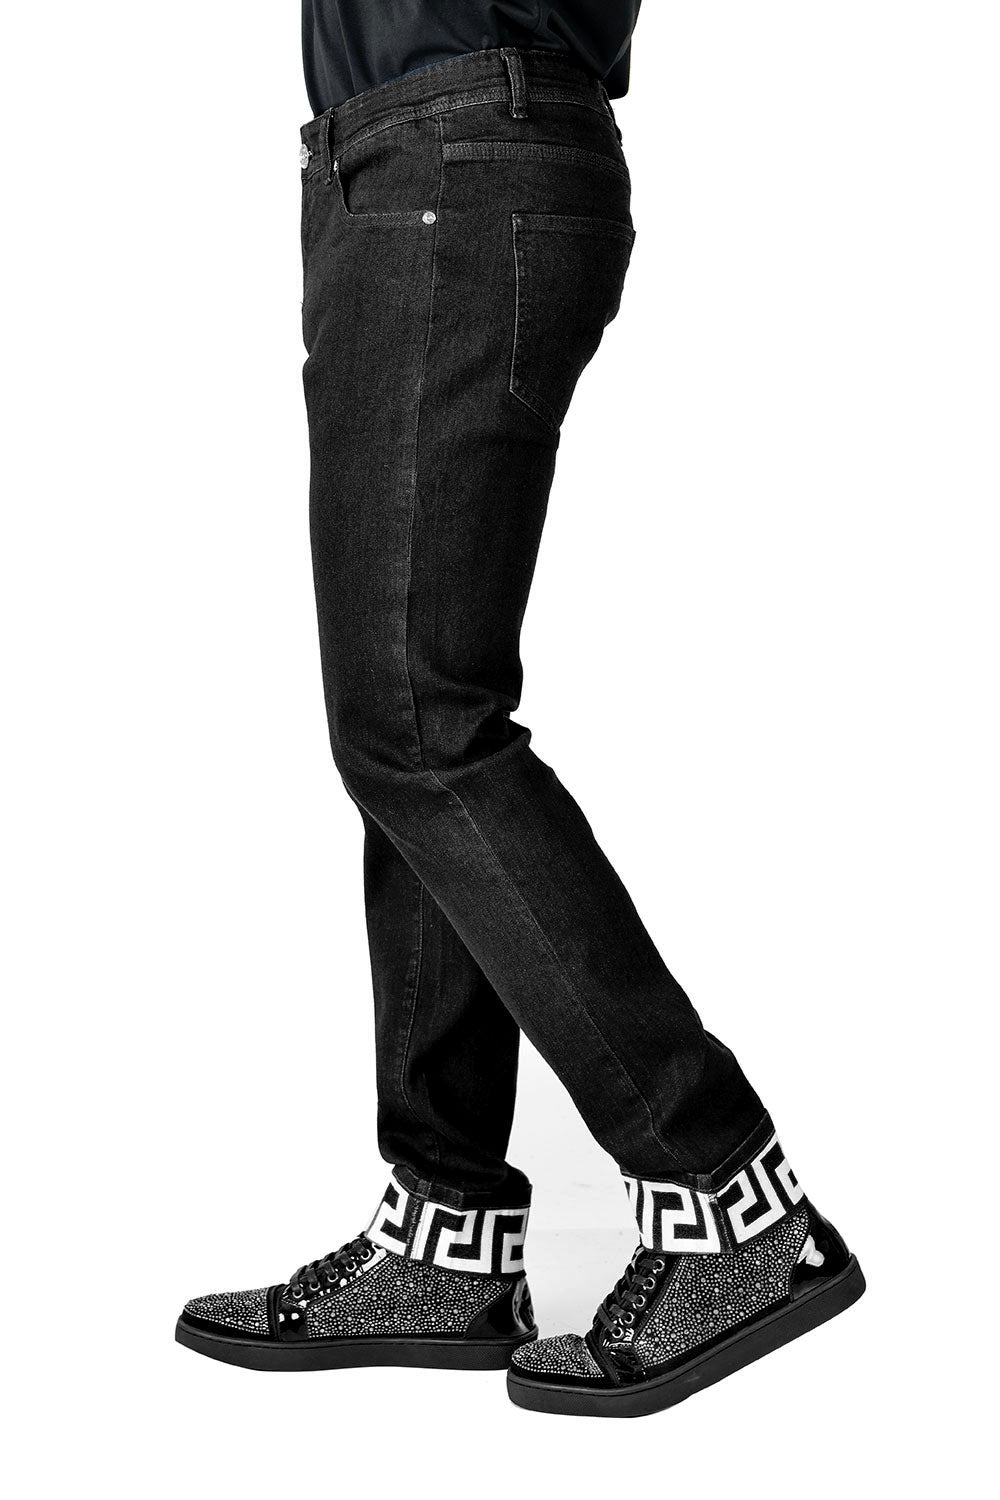 BARABAS Men's Greek Key Pattern Design Luxory Jeans SN8858 Black